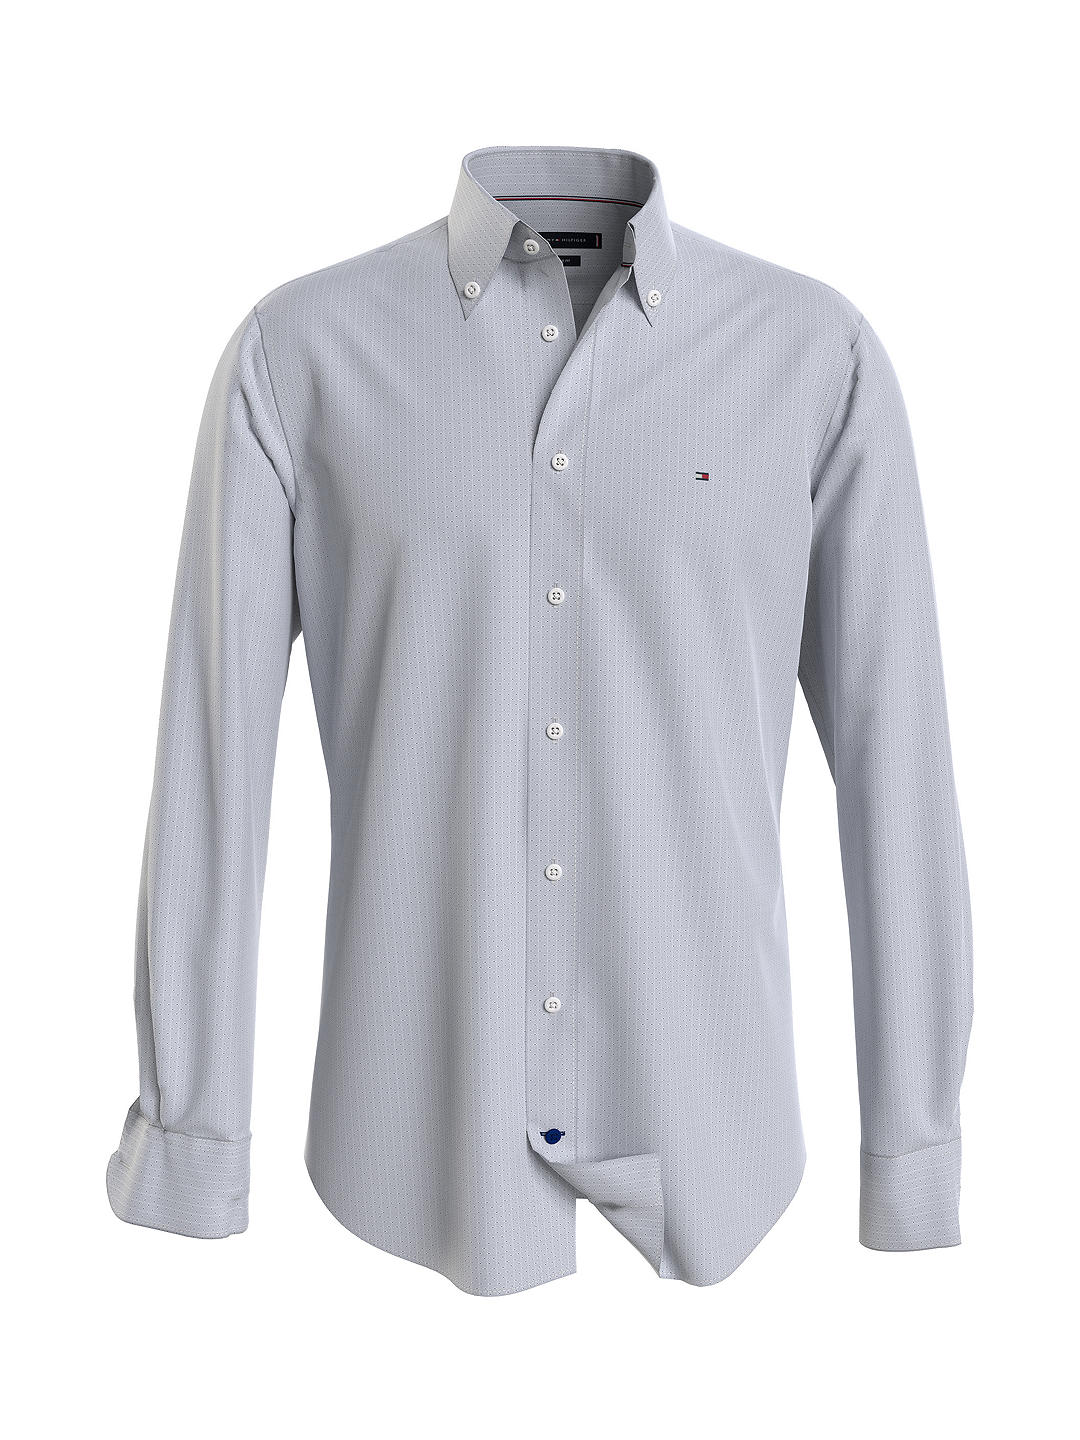 Tommy Hilfiger Dobby Cotton Oxford Shirt, Th Navy/White